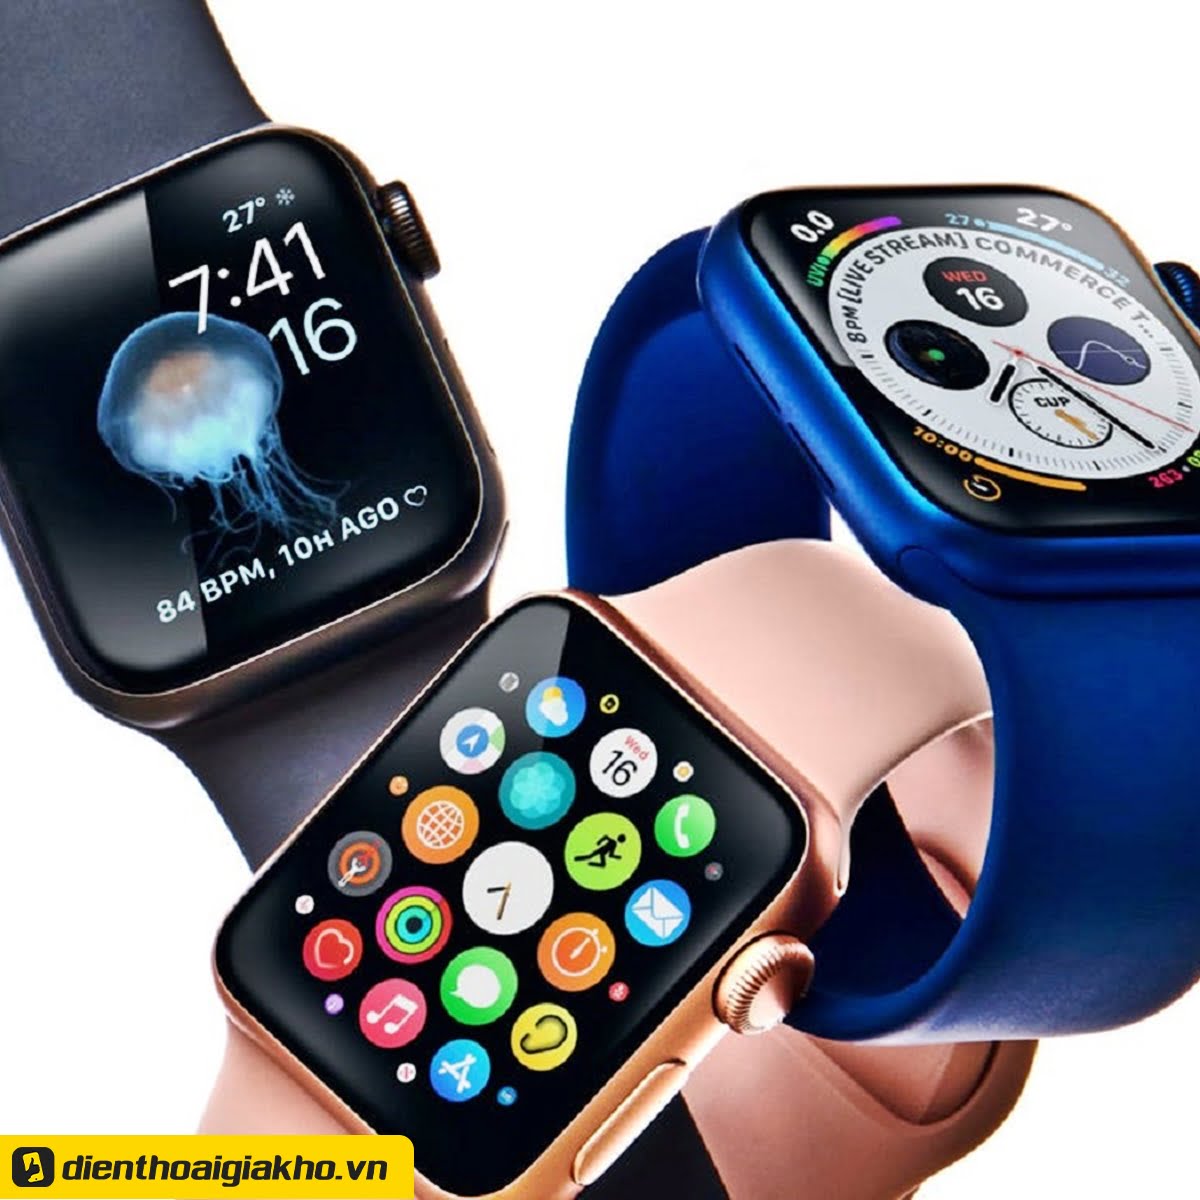 Apple Watch chính hãng khi đến tay người tiêu dùng sẽ sở hữu những sản phẩm tốt và hiện đại nhất. 